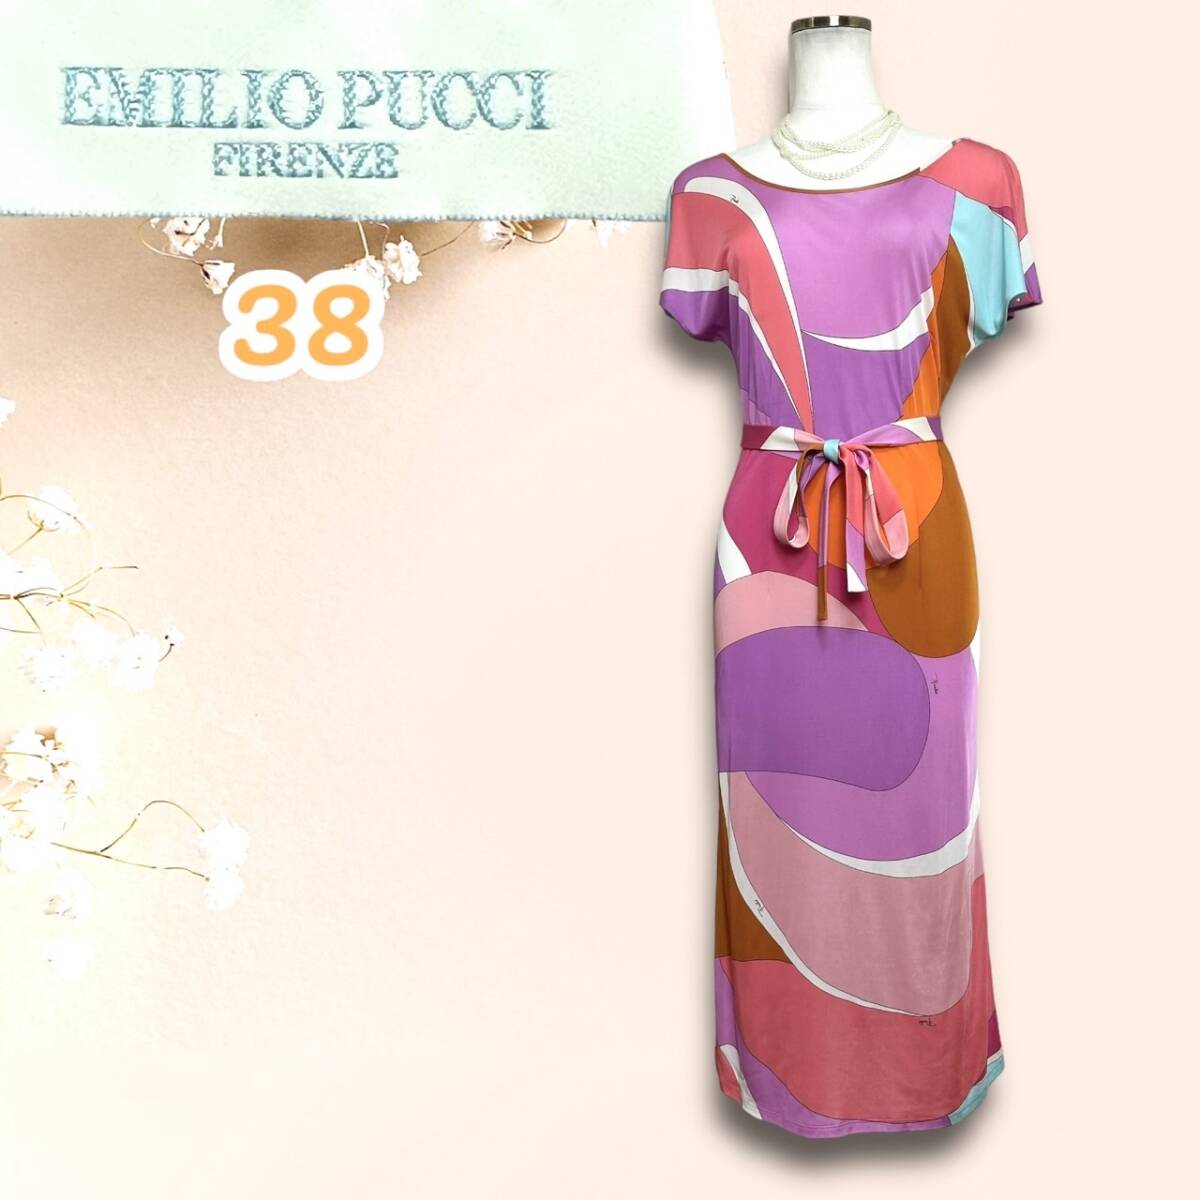 * прекрасный товар *EMILIO PUCCI Emilio Pucci One-piece общий рисунок pchi рисунок ремень имеется короткий рукав 38 MADE IN ITALY Италия производства стандартный магазин бирка длинный эластичность 